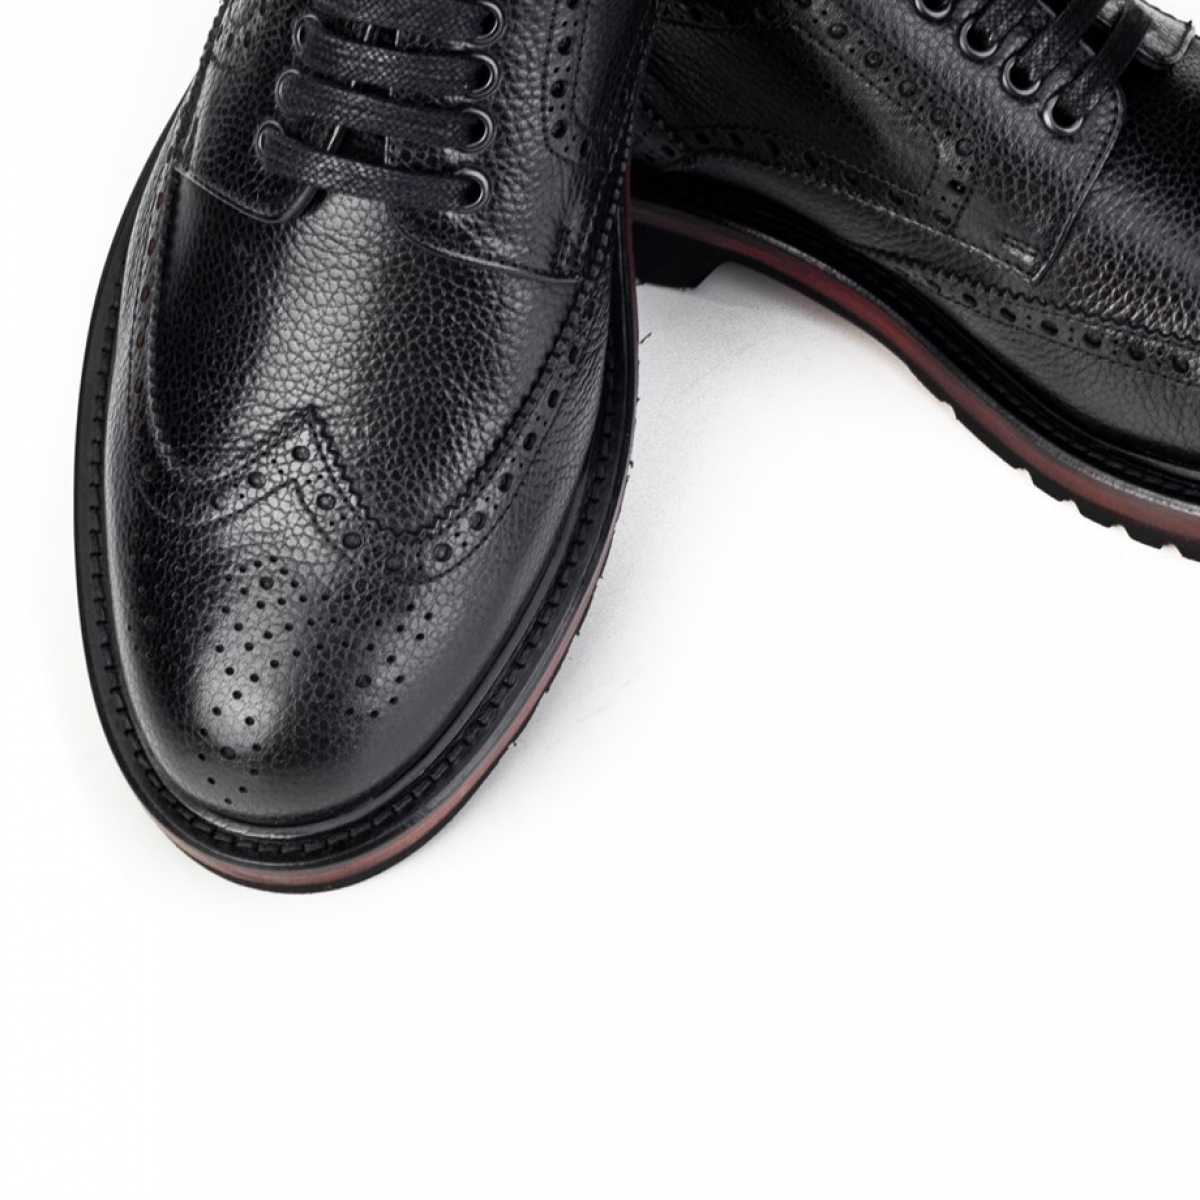 Flo Hakiki Deri Siyah Bağcıklı Erkek Klasik Ayakkabı. 4